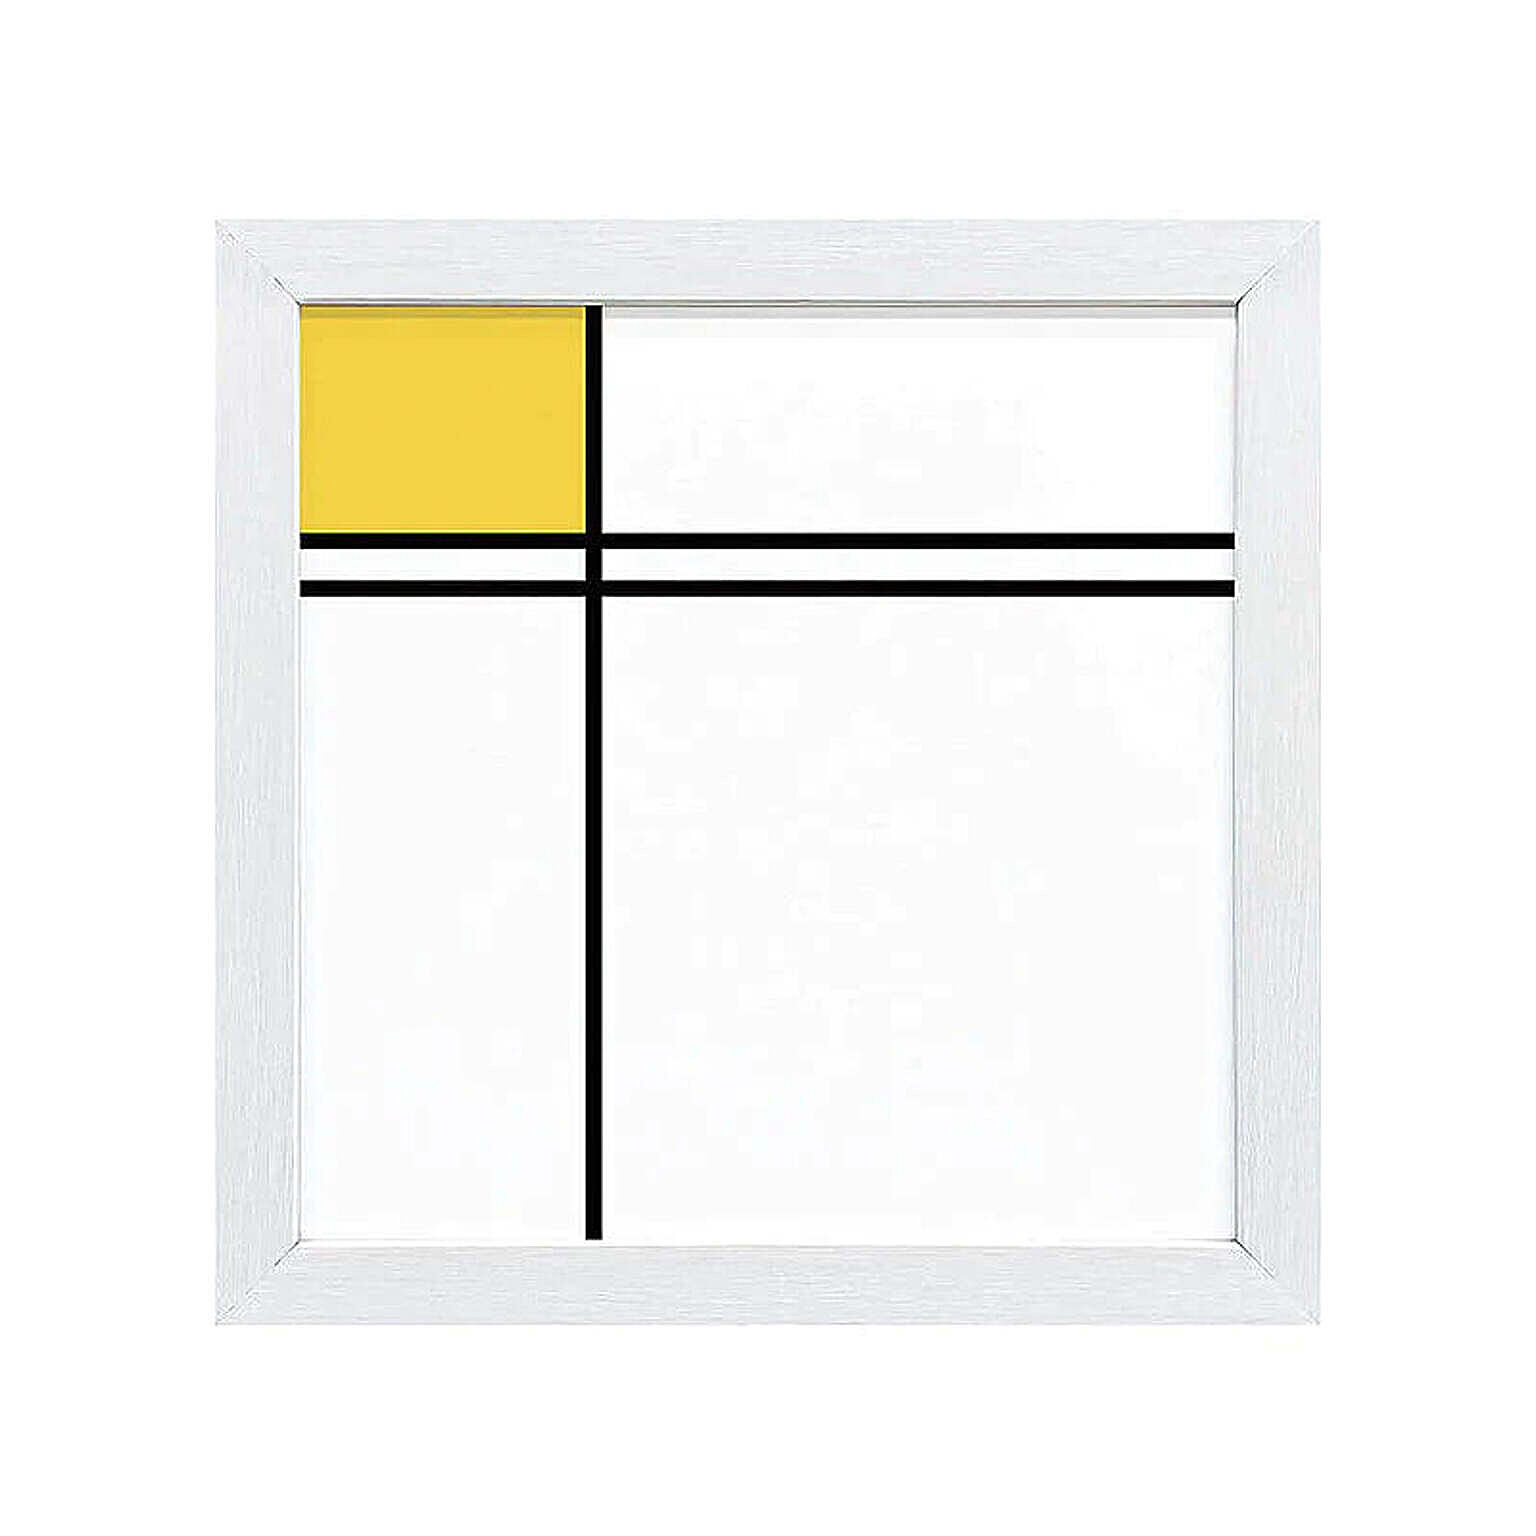 Piet Mondrian（ピエト モンドリアン）  二重線と黄色のコンポジション アートポスター（フレーム付き） m11653